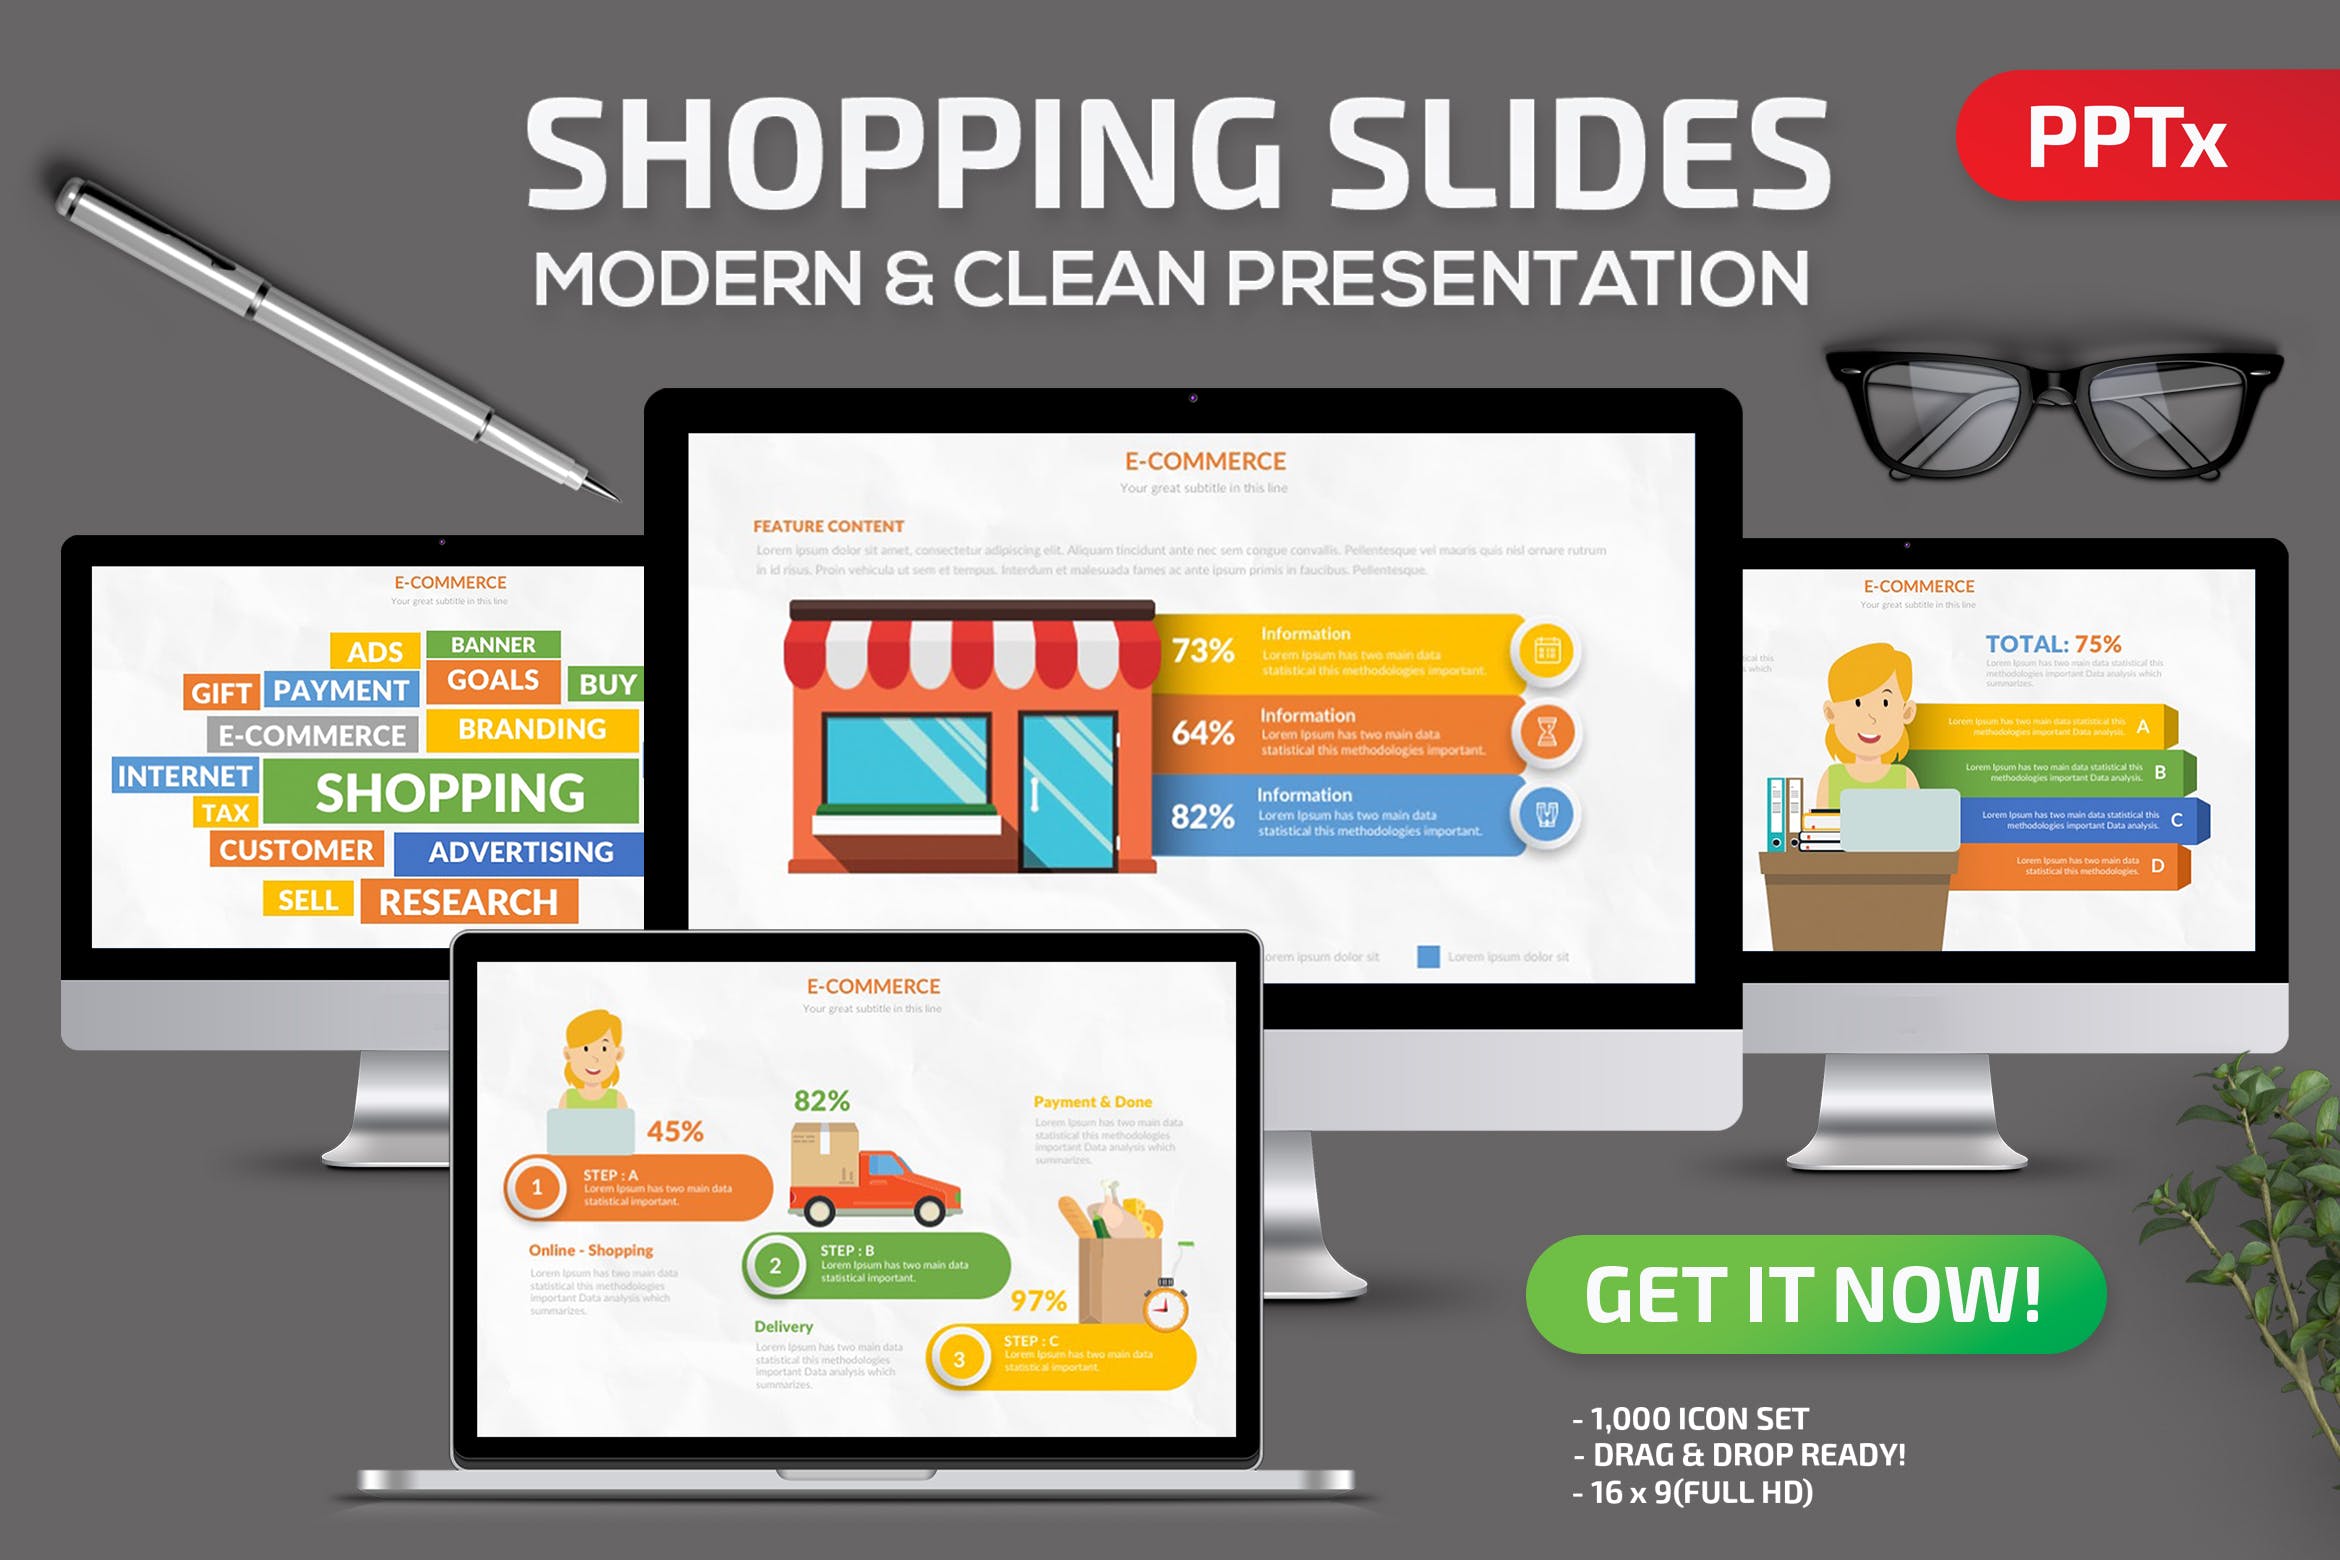 网上商城电子商务/大型商超规划方案PPT模板素材 Shopping Powerpoint Presentation插图